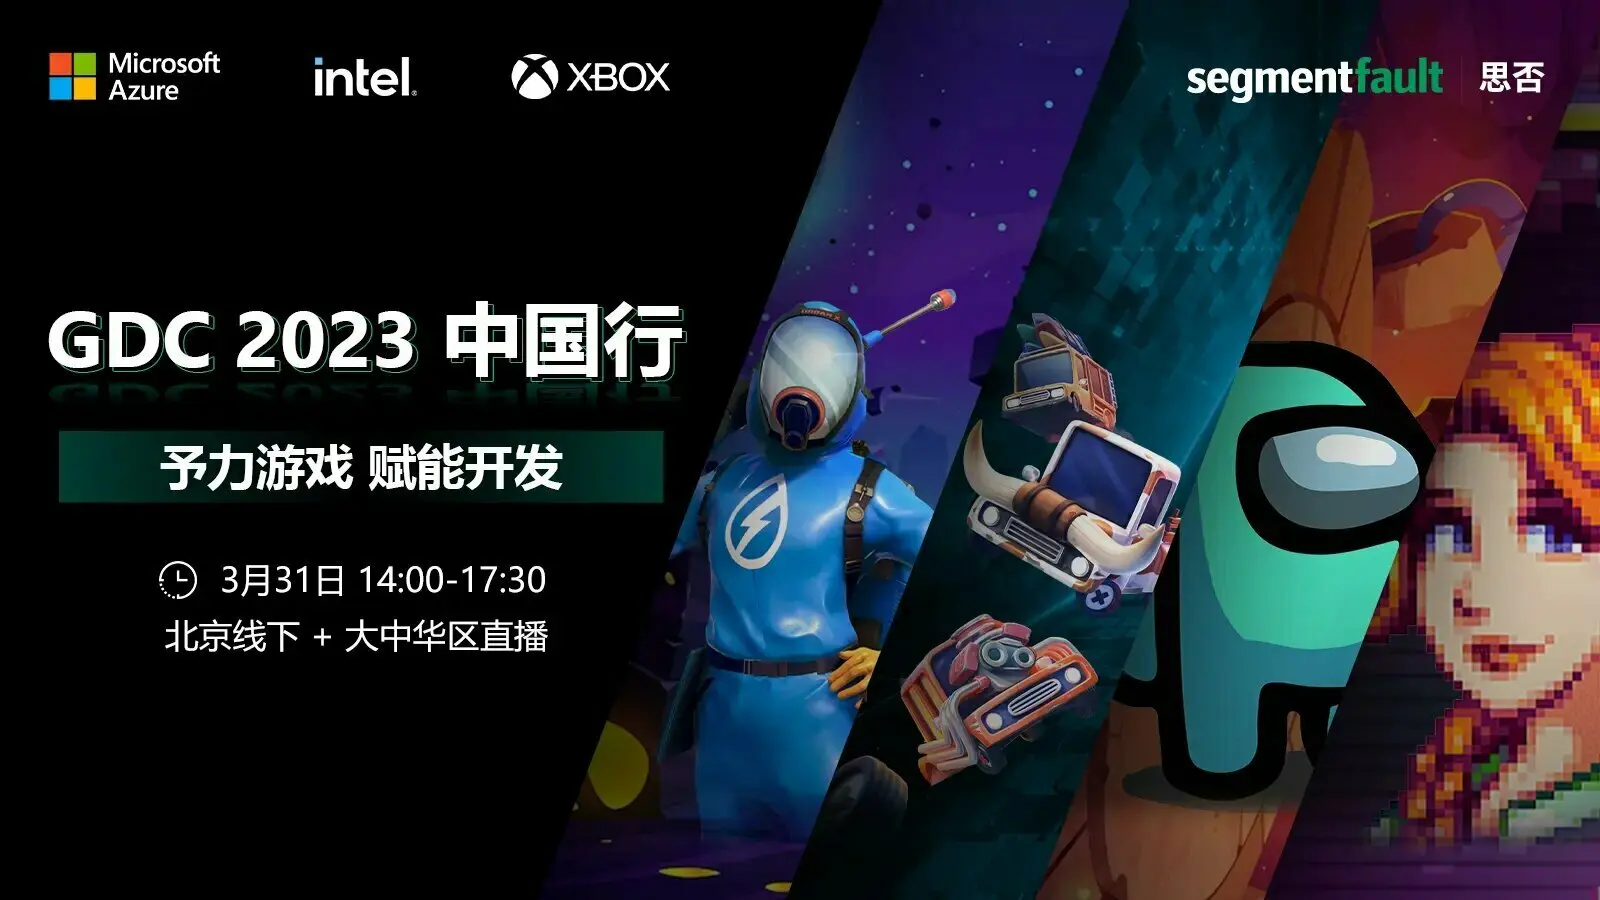 微软中国「GDC 2023 中国行」活动将于 3 月 31 日举办